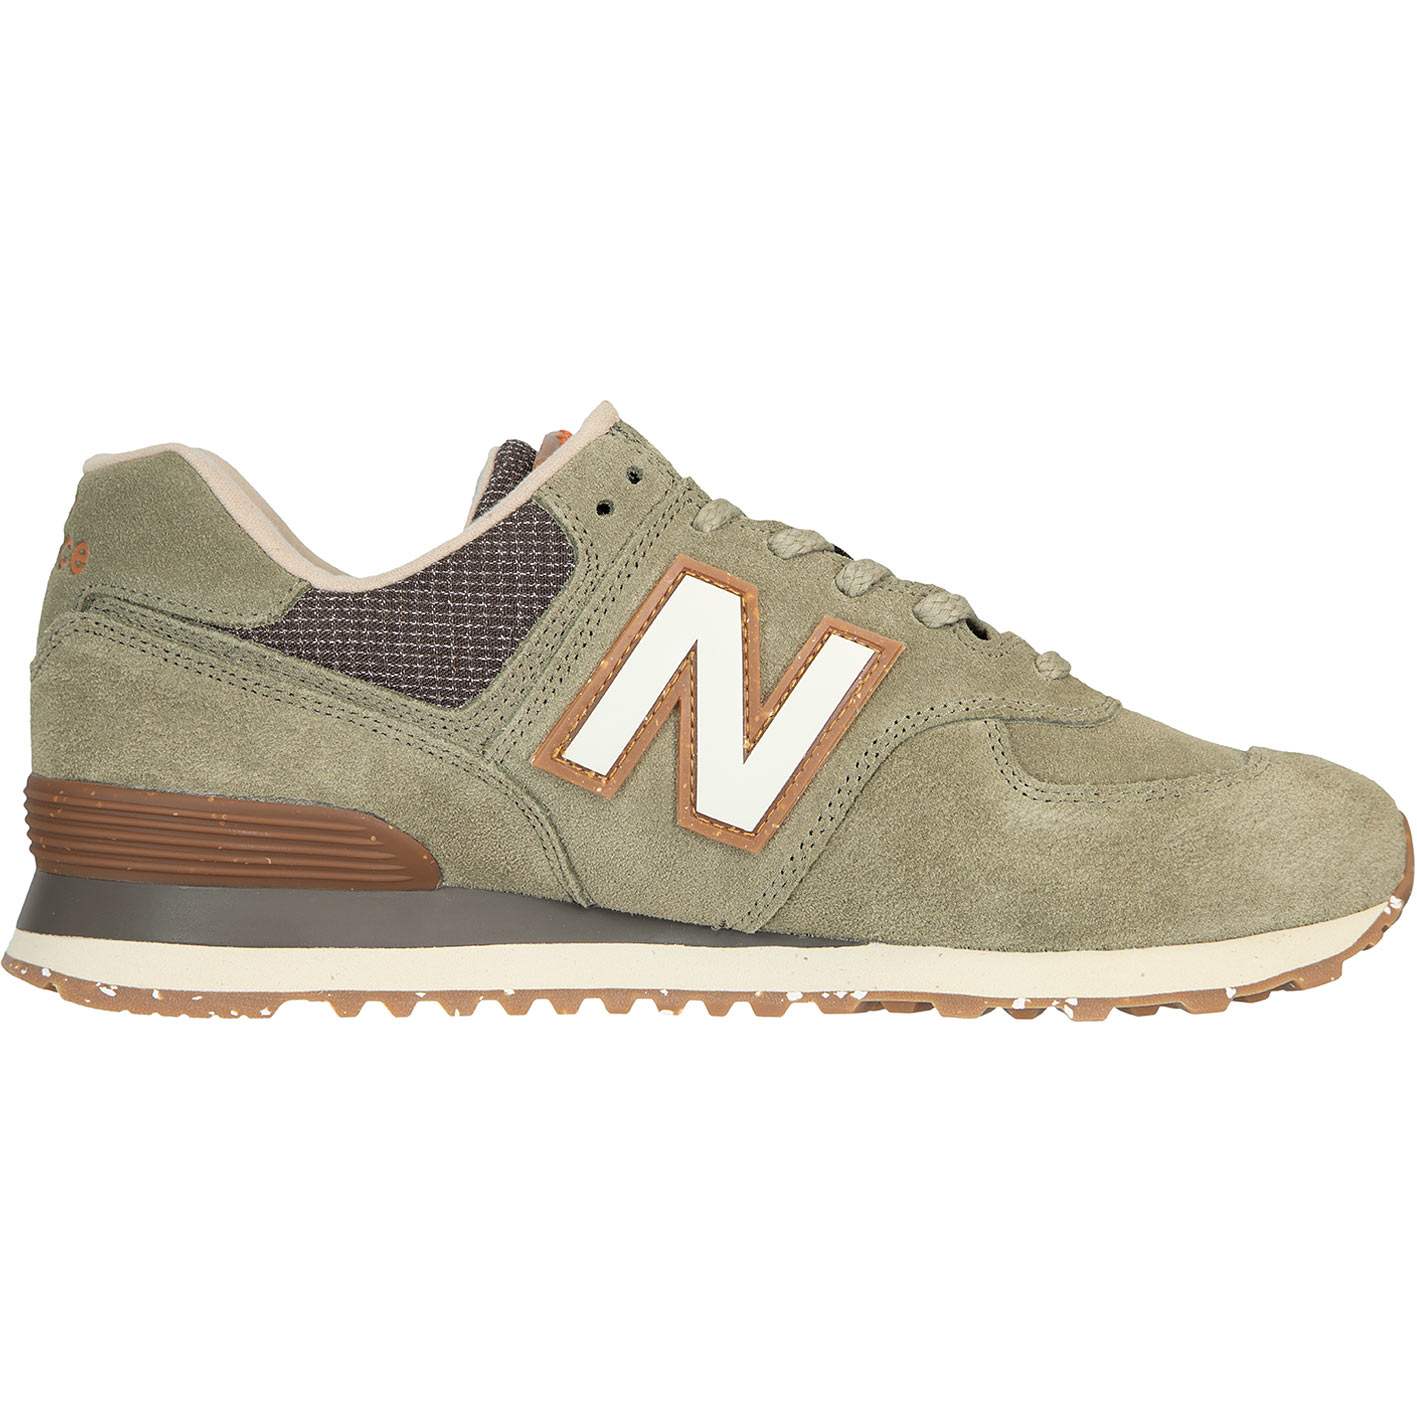 ☆ New Balance NB 574 Sneaker Schuhe olive - hier bestellen!